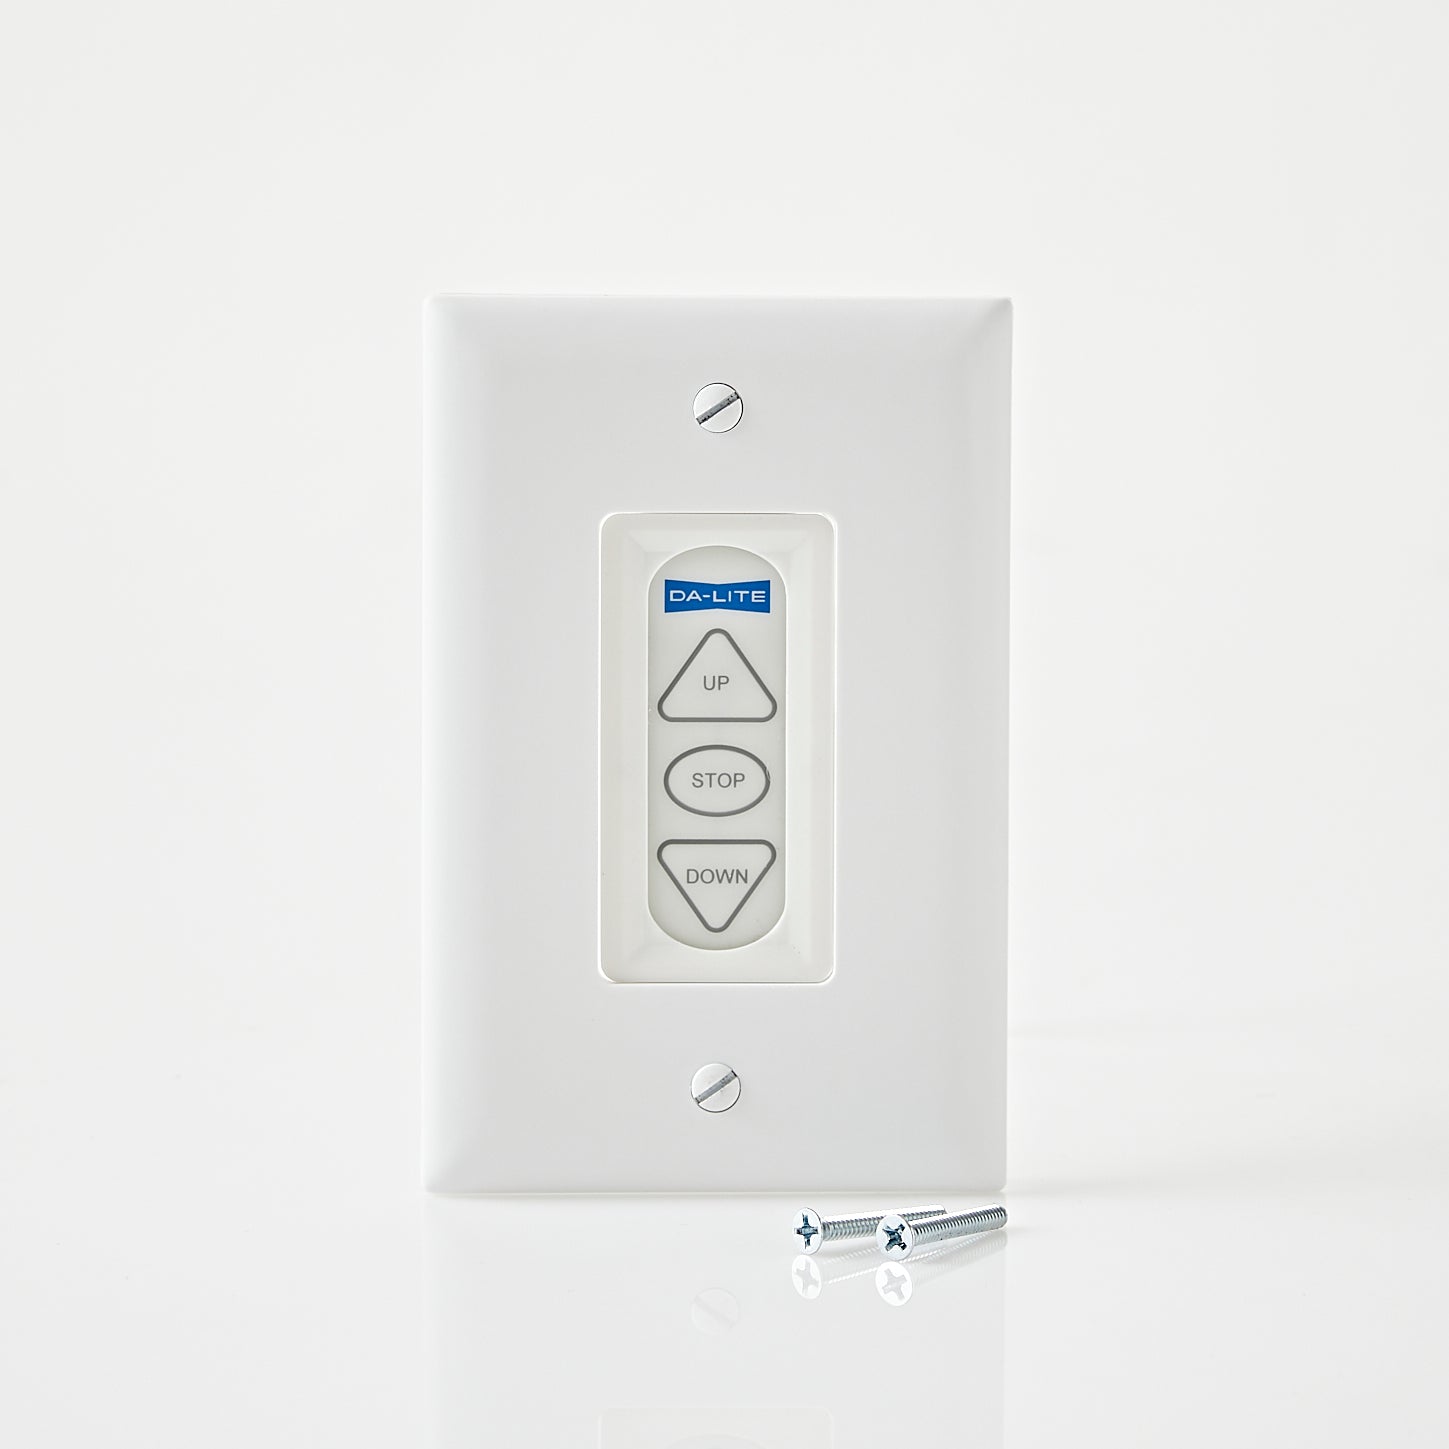 Da-Lite Smart Low Voltage Wall Switch